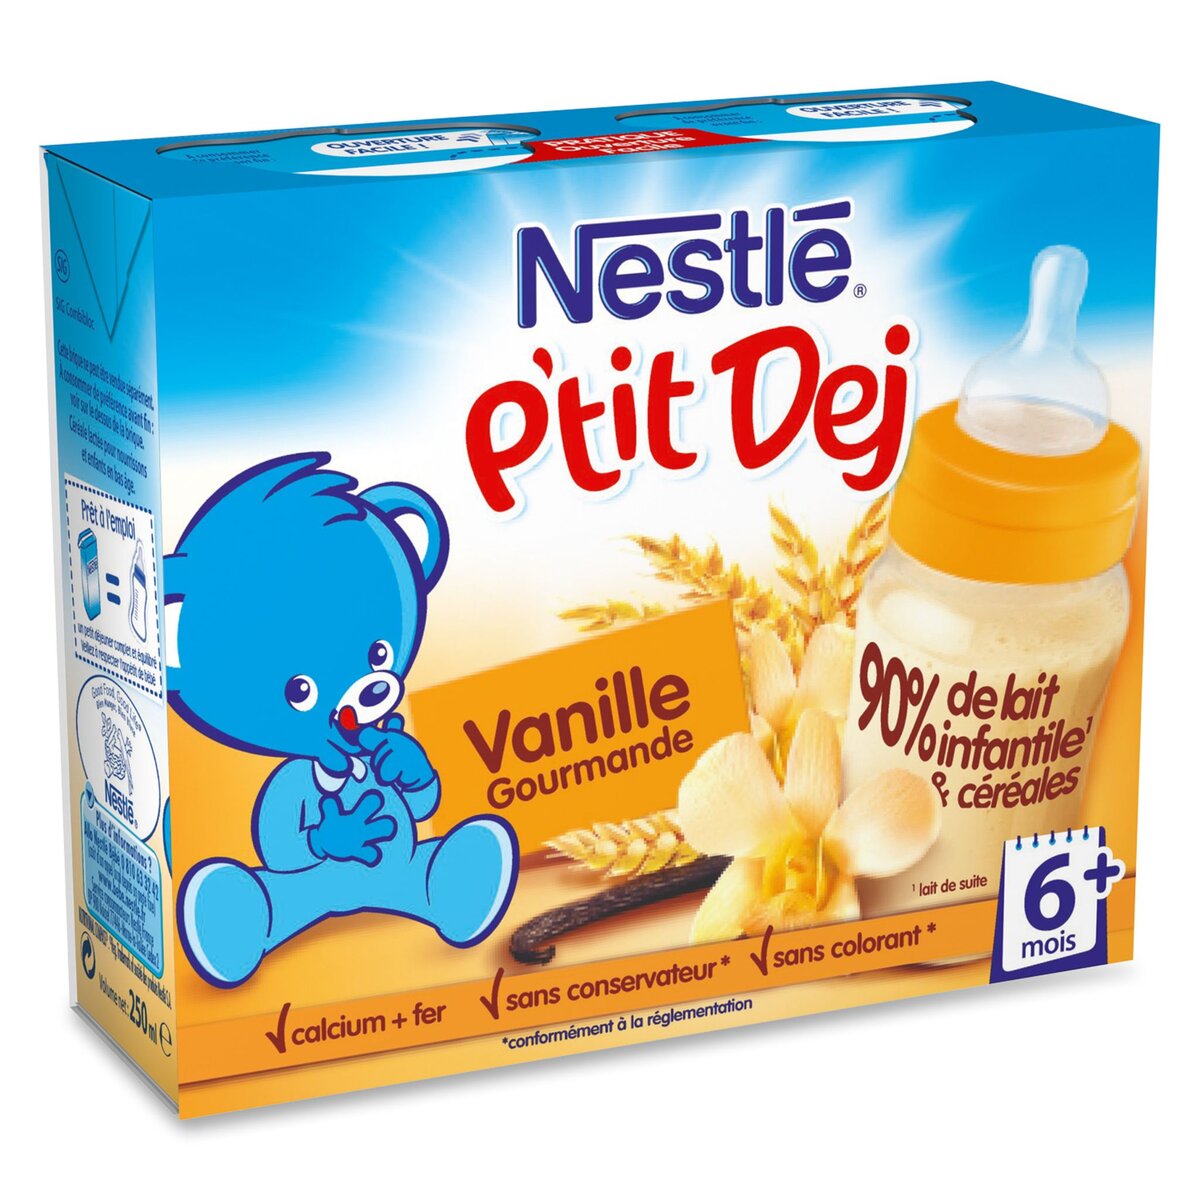 NESTLE Nestlé ptit dej lacté vanille gourmande 2x250ml dès 6mois